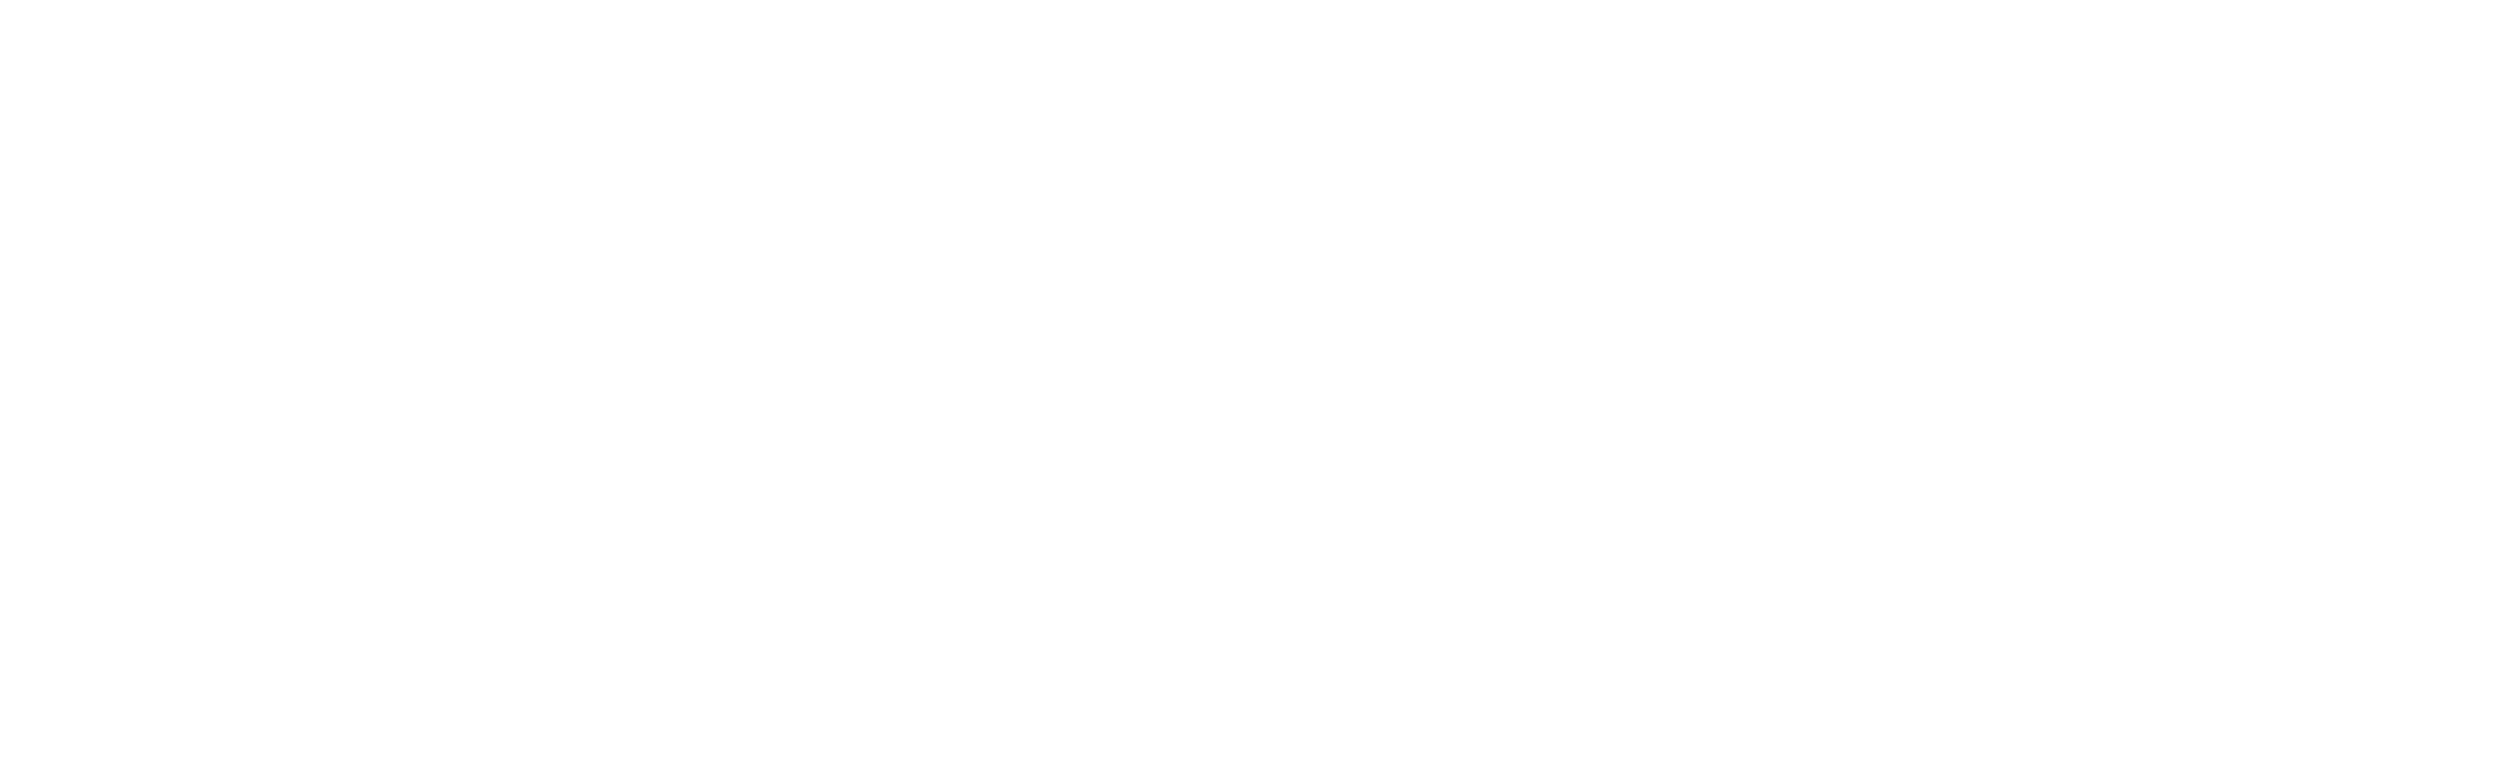 Agencja Artystyczna Jan Malinowski